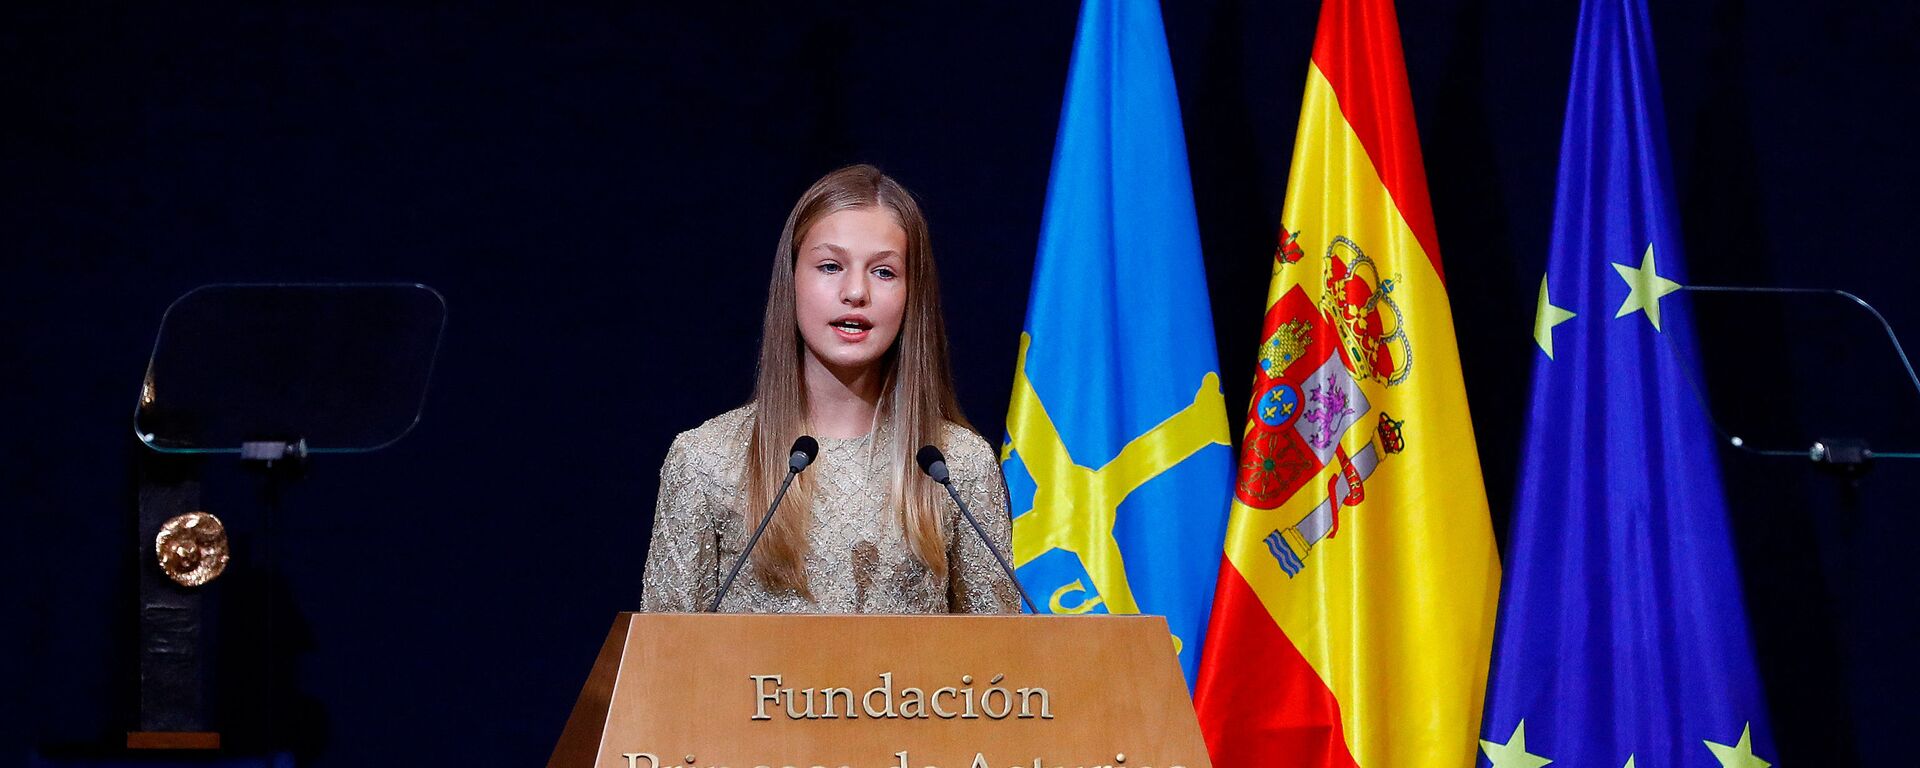  La Princesa Leonor de España pronuncia un discurso durante la ceremonia de entrega del premio Princesa de Asturias 2020 - Sputnik Mundo, 1920, 10.02.2021